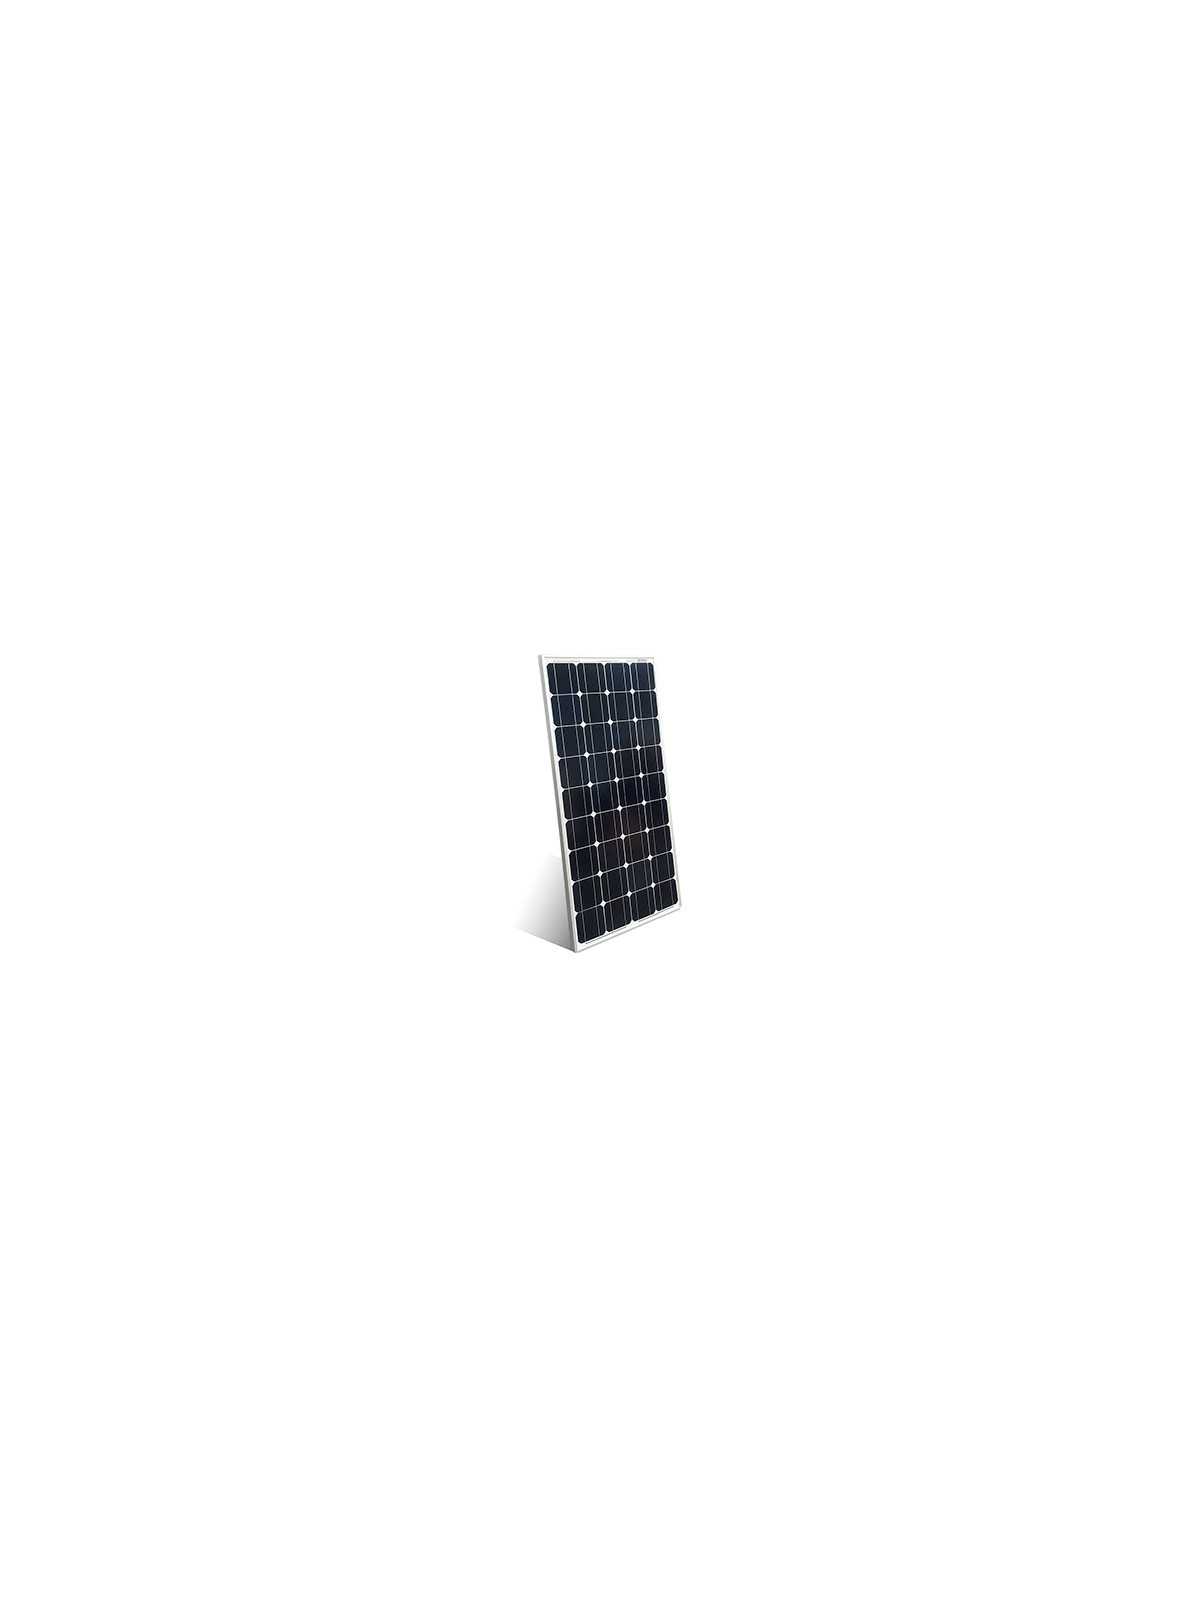 Solar Panel 12V 100Wp Monocrystalline